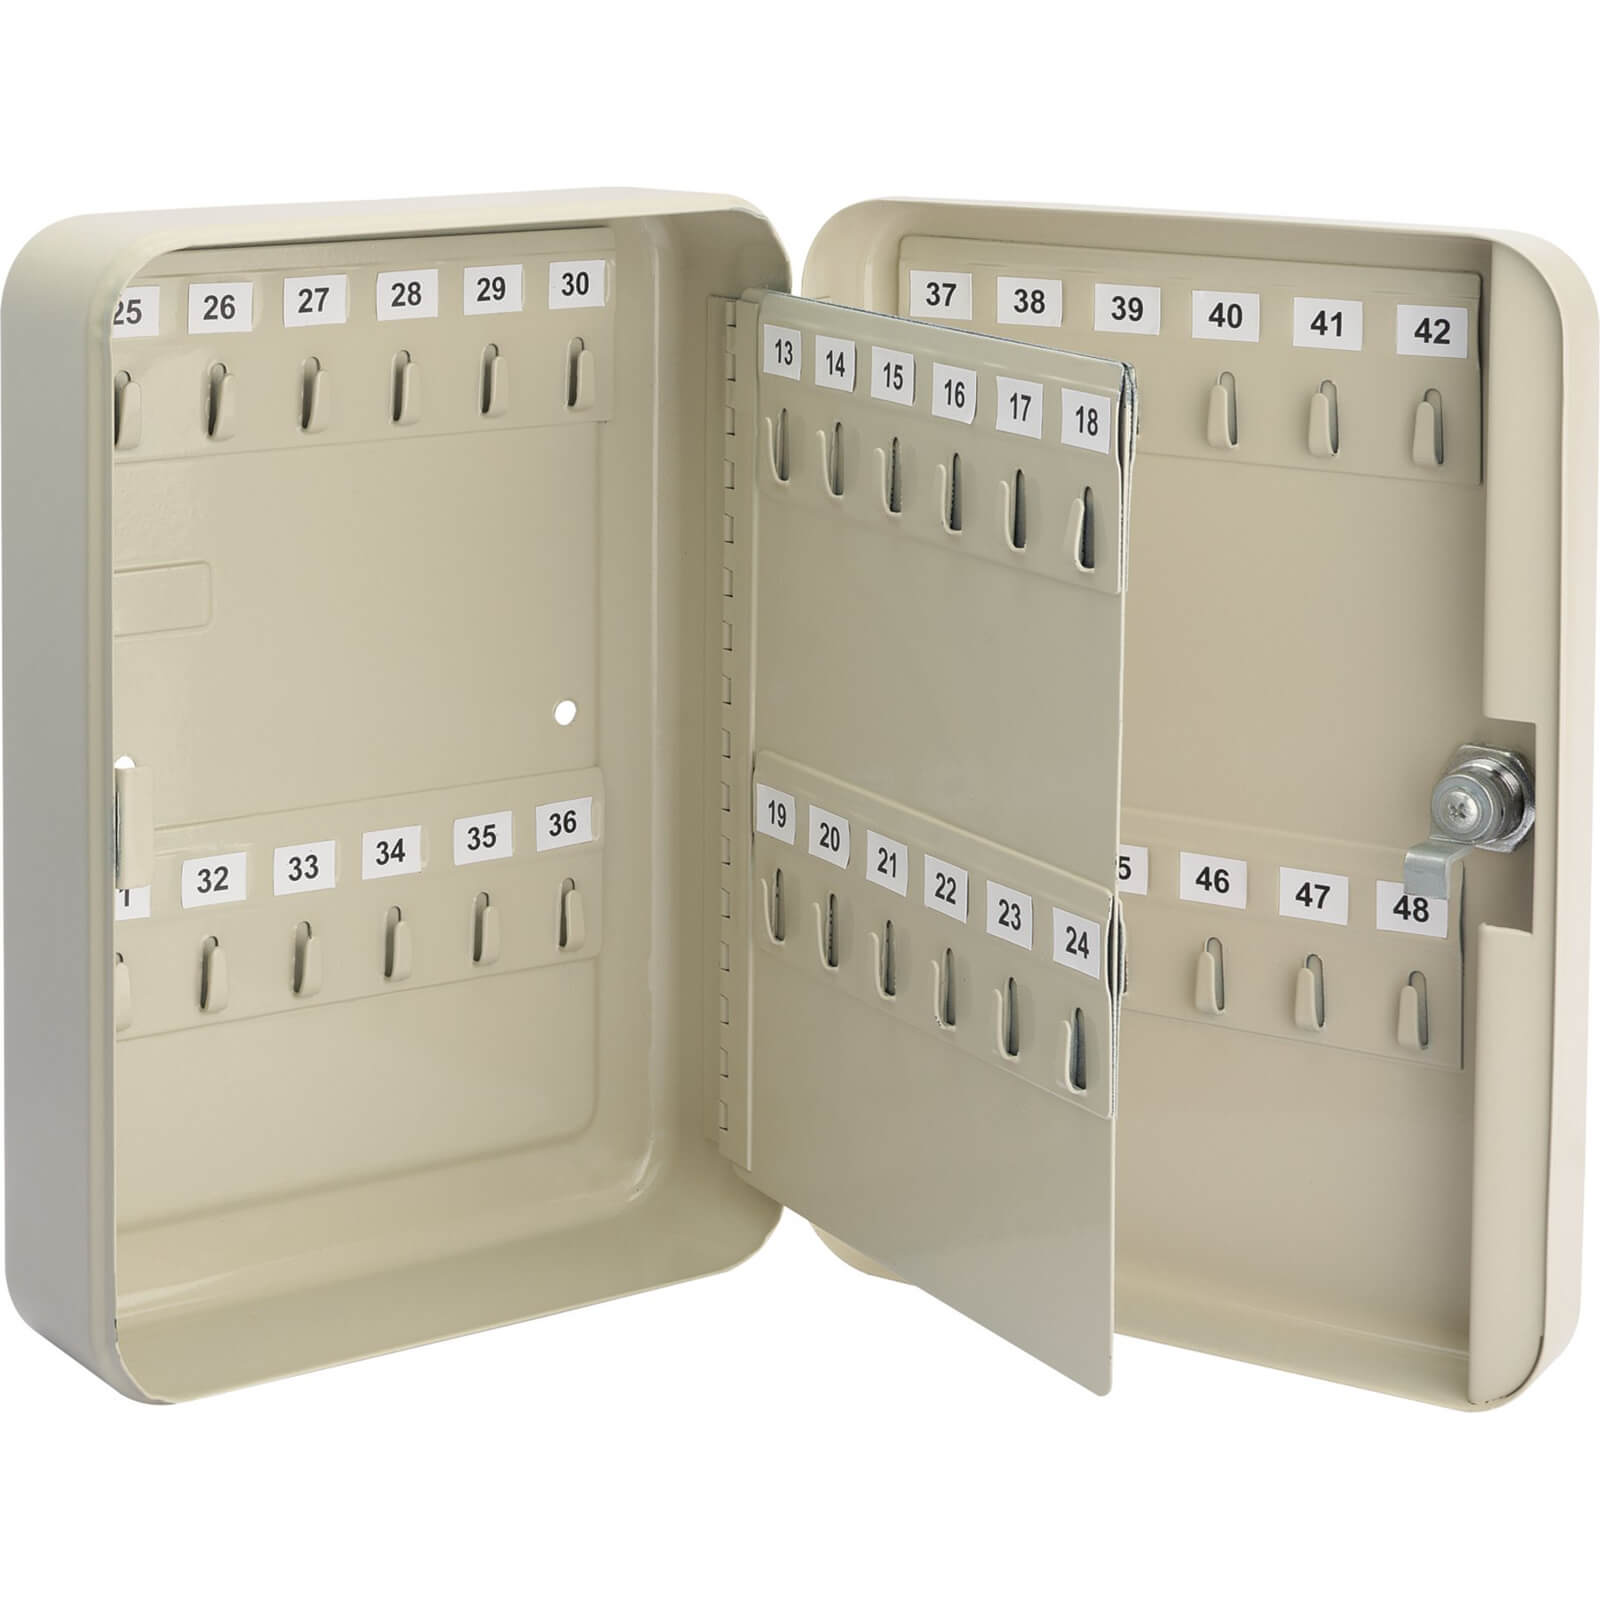 Image of Draper 48 Hook Key Cabinet Safe